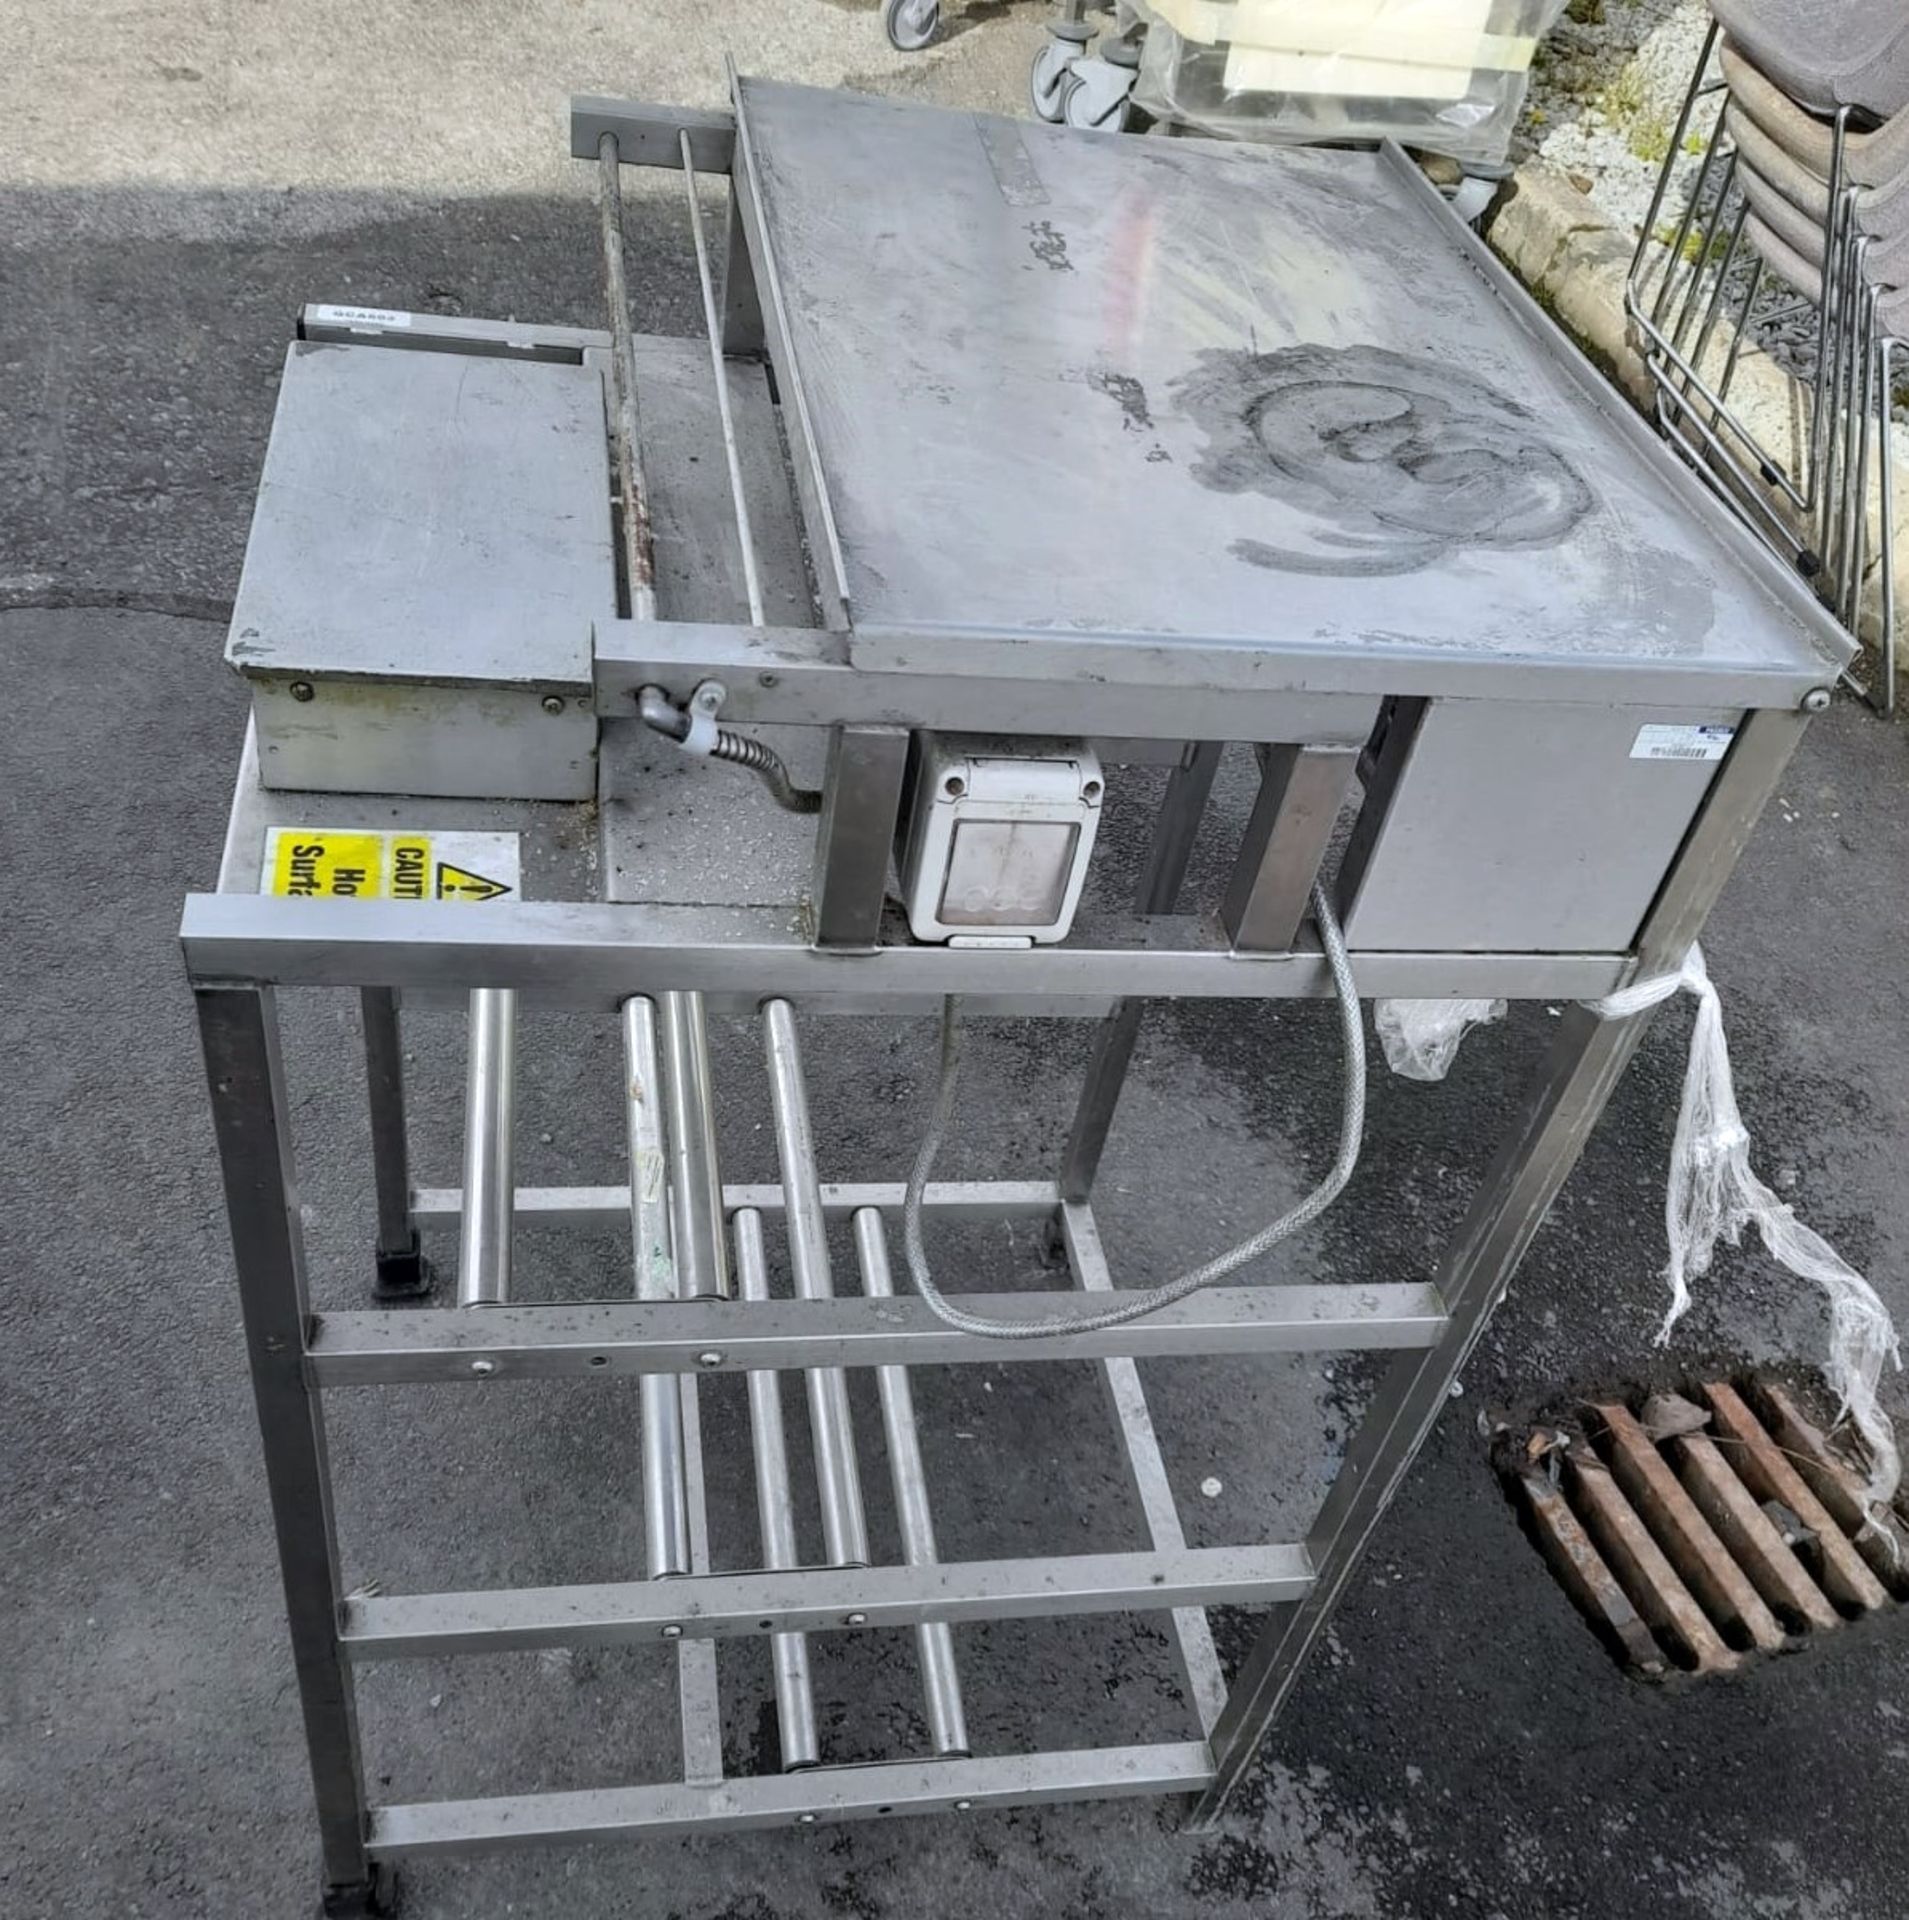 1 x Overwrapper Tray Heat Sealer Unit - 240v - Image 2 of 3